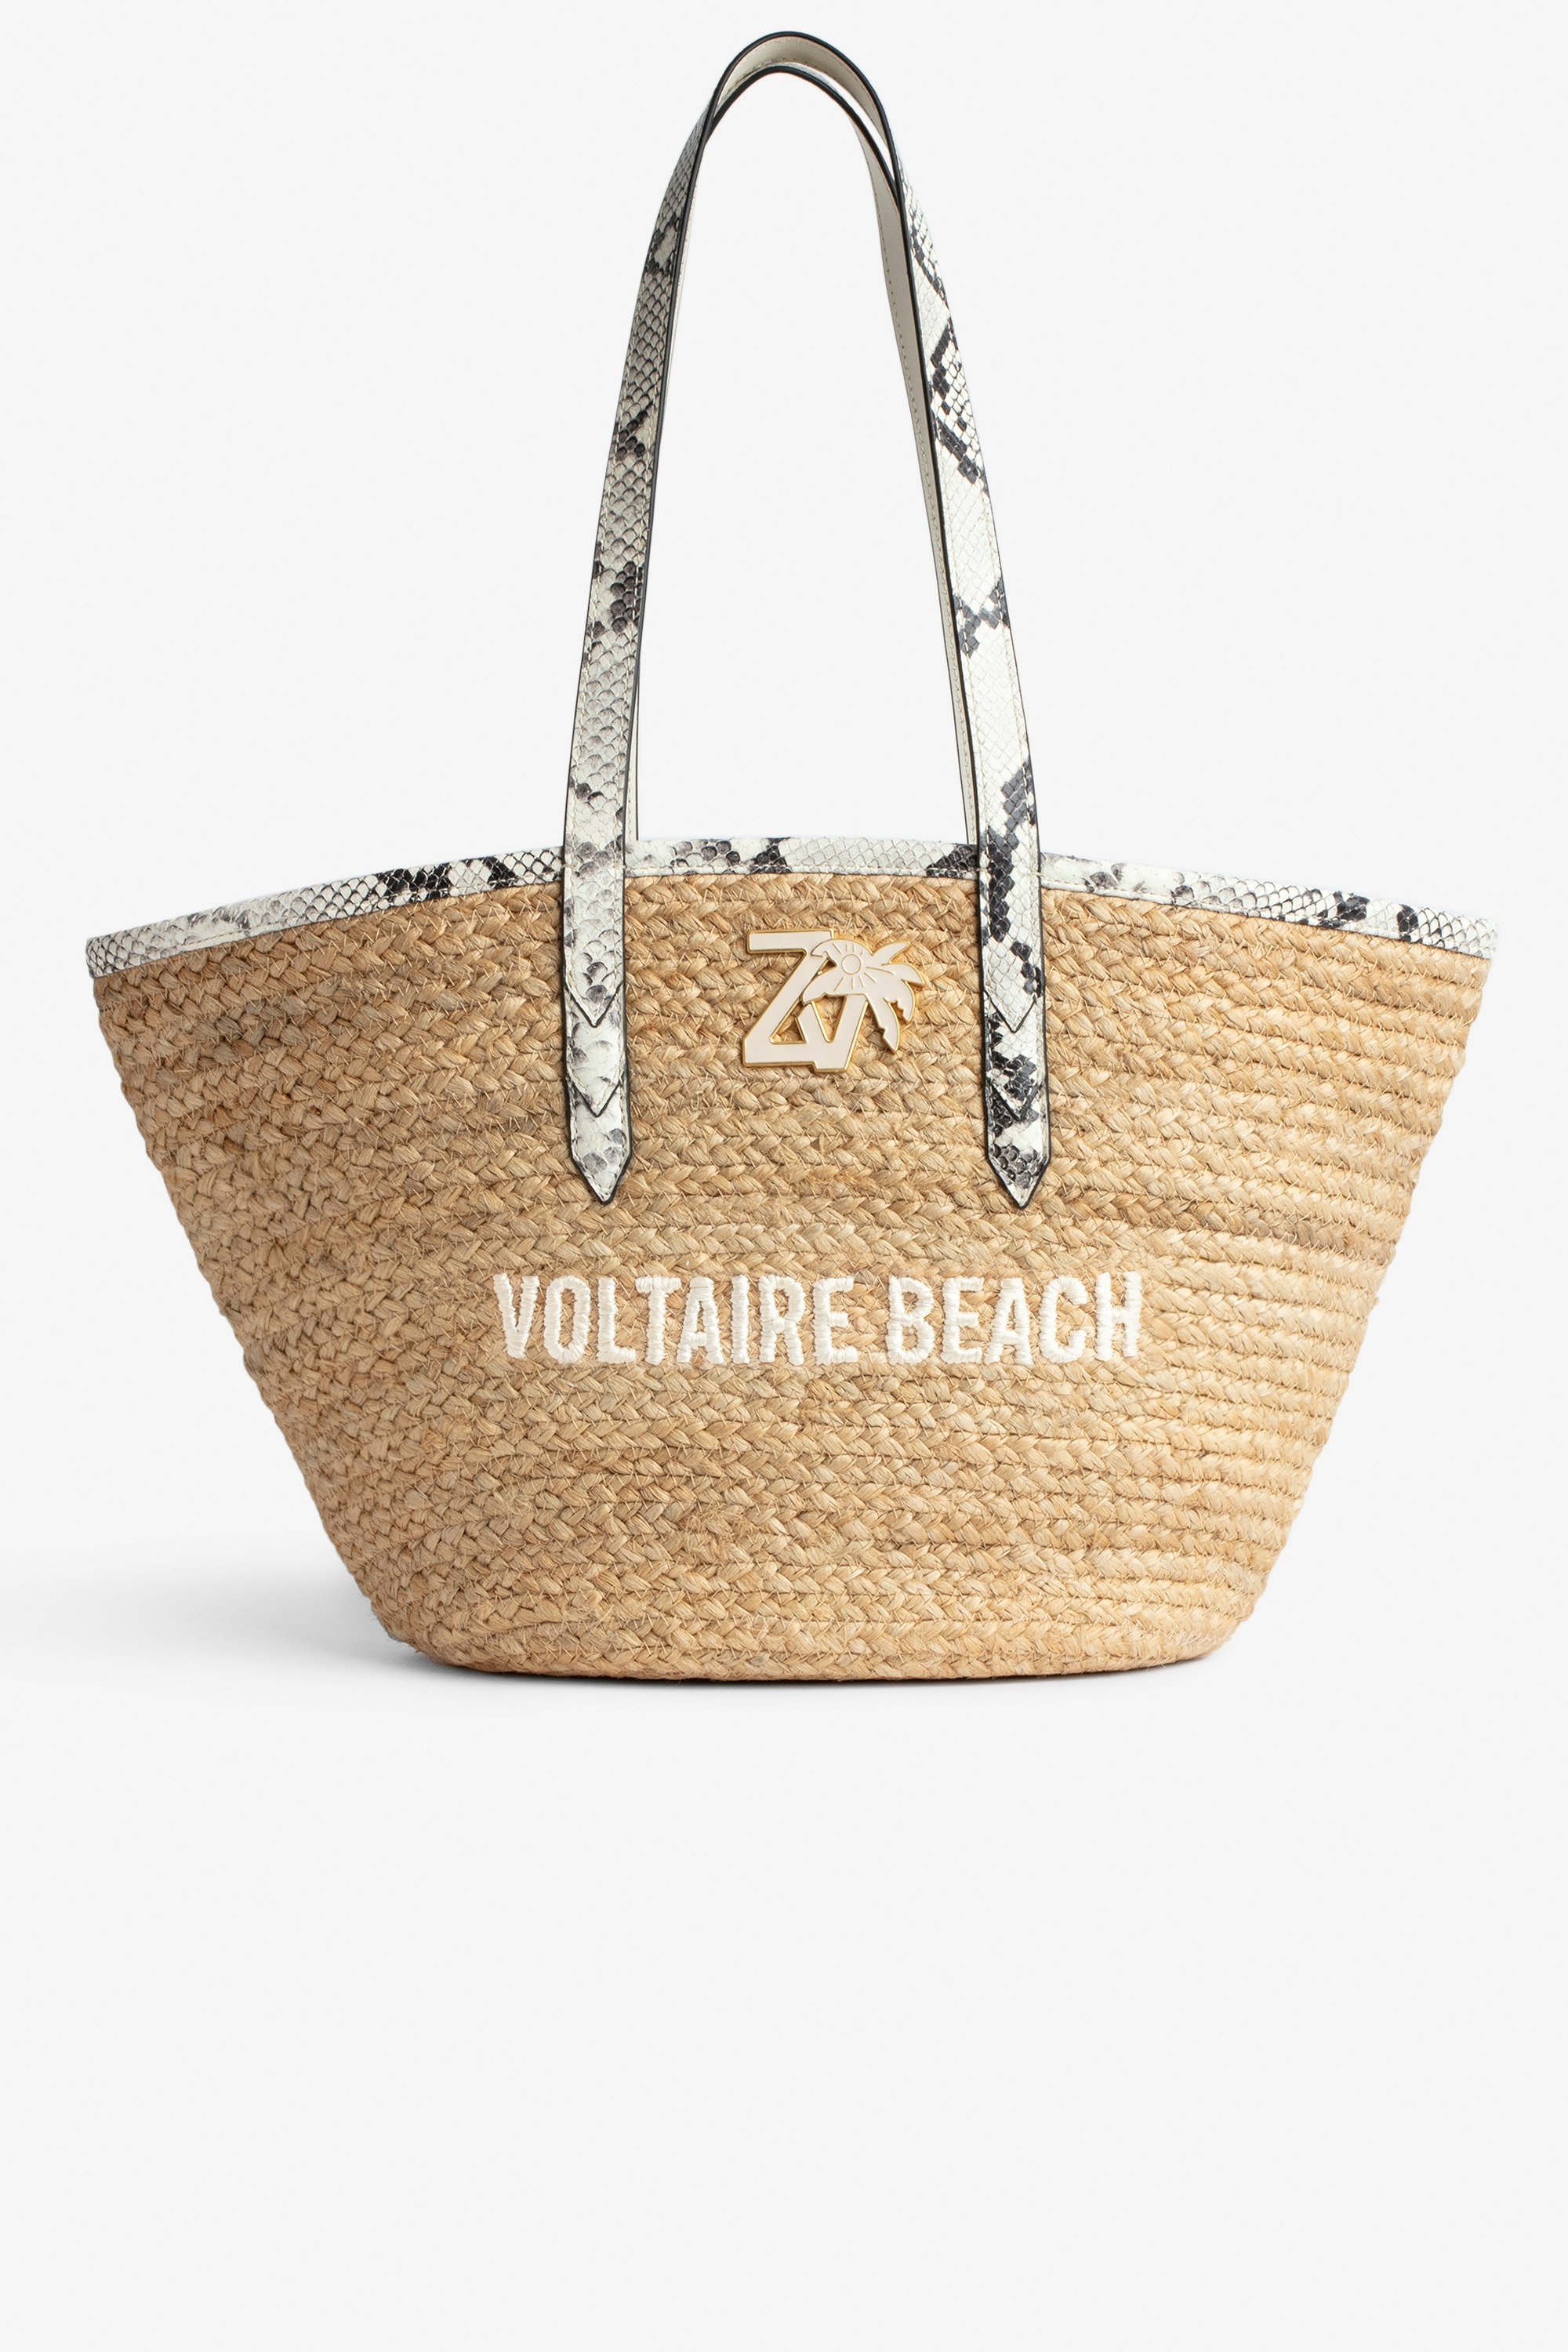 Sac Le Beach Bag - Sac en paille à anses en cuir écru effet python, brodé "Voltaire Beach" et orné d'un charm ZV.